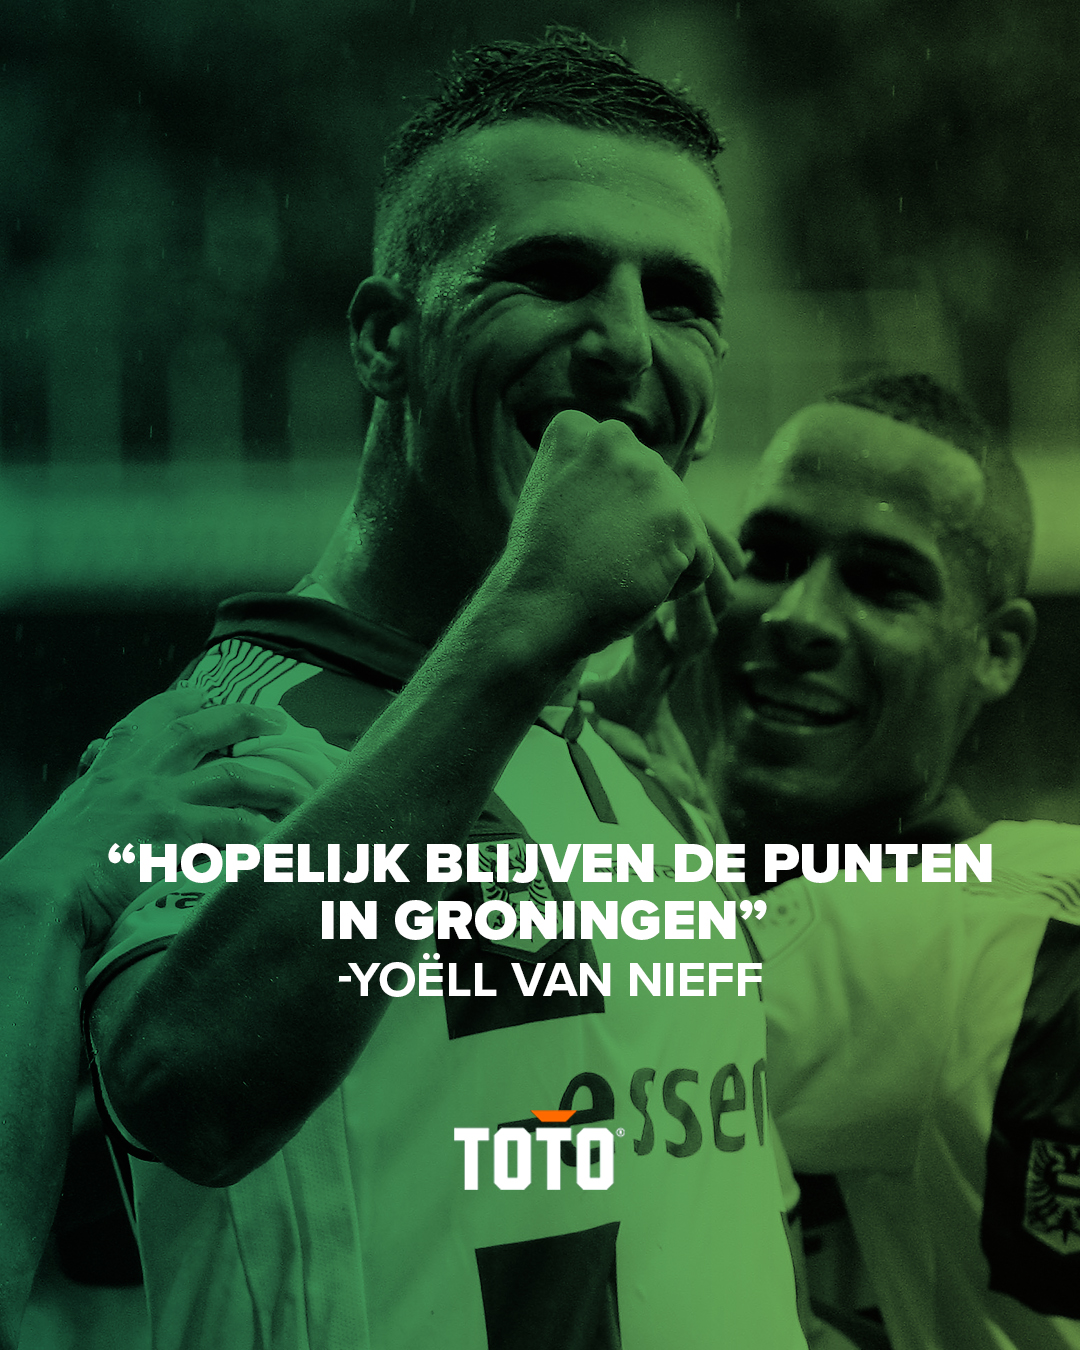 Yoell van Nieff